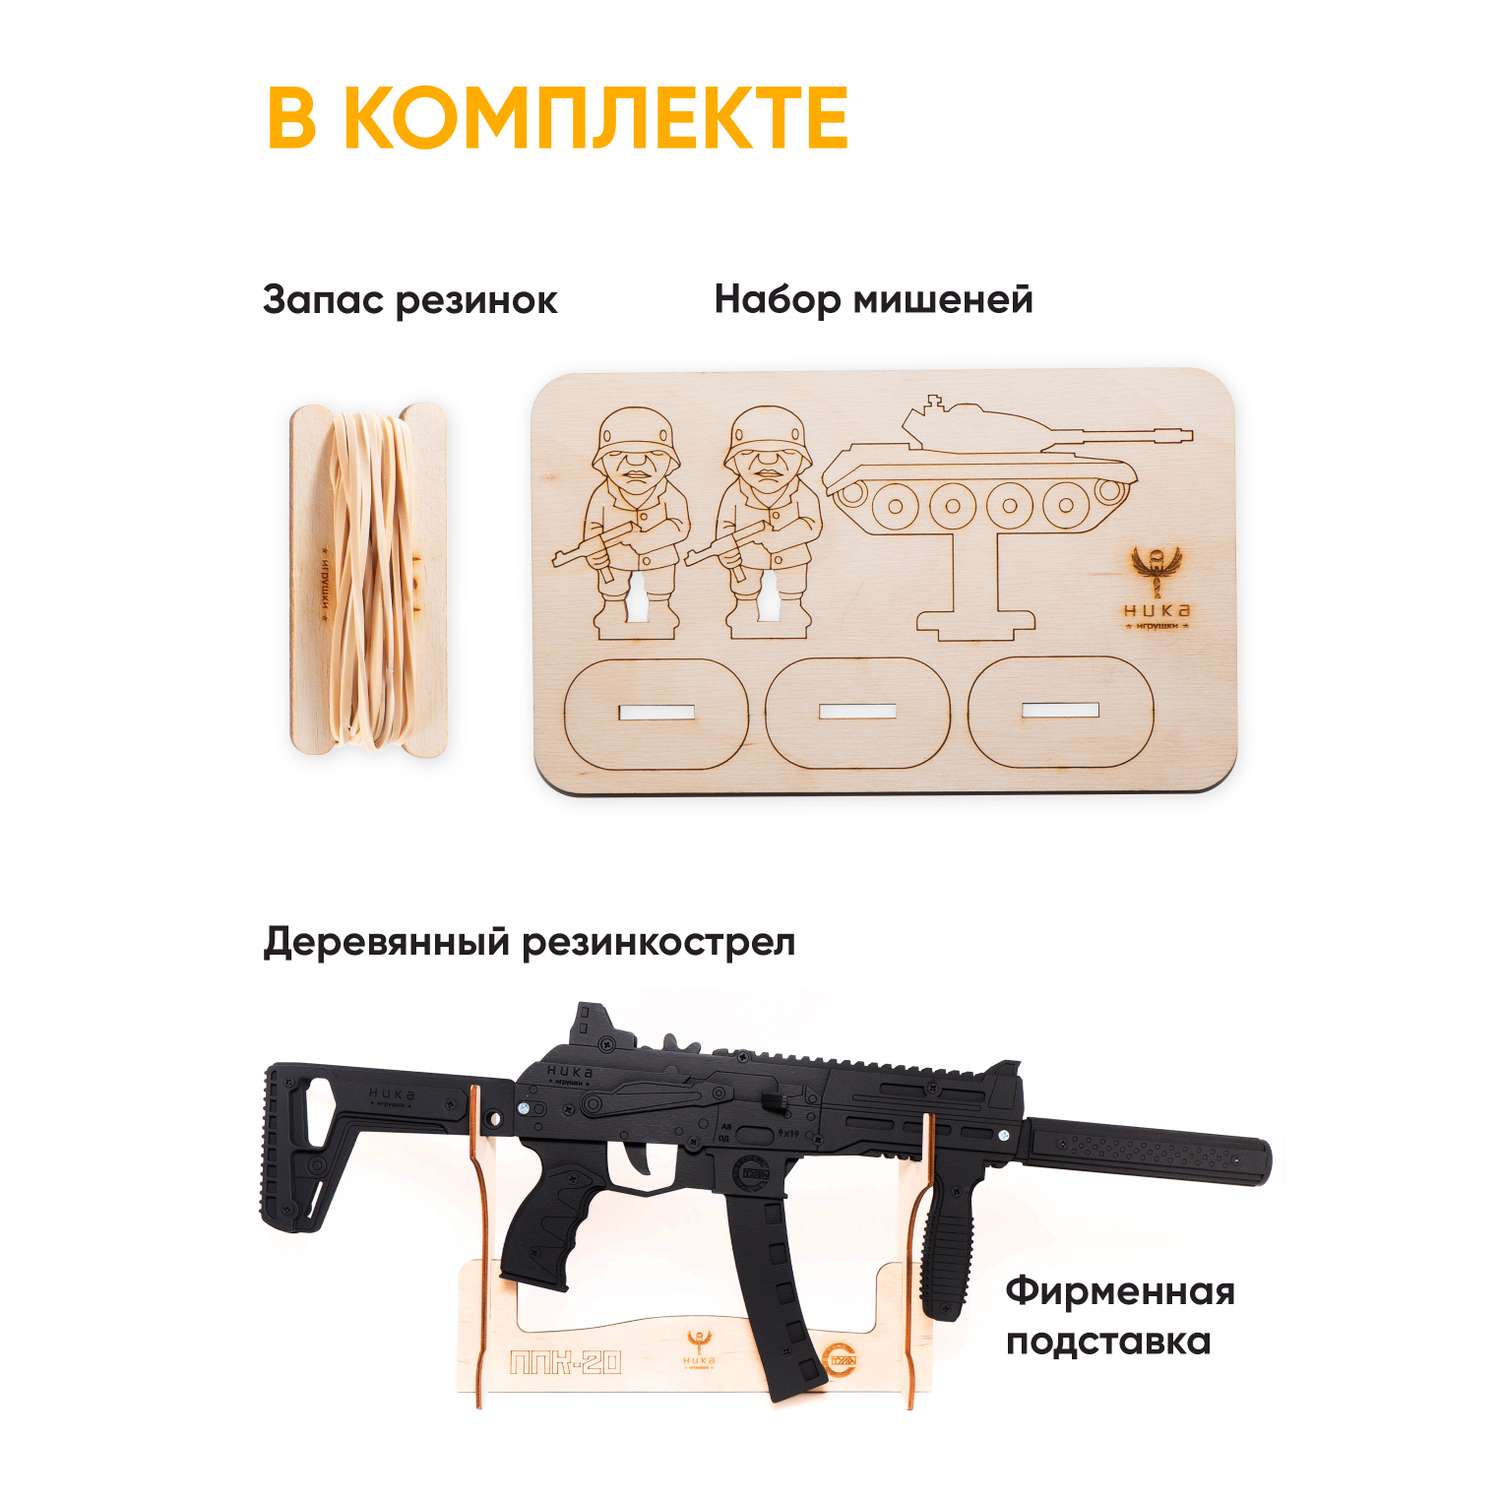 Резинкострел НИКА игрушки Автомат ППК-20 в подарочной упаковке - фото 2